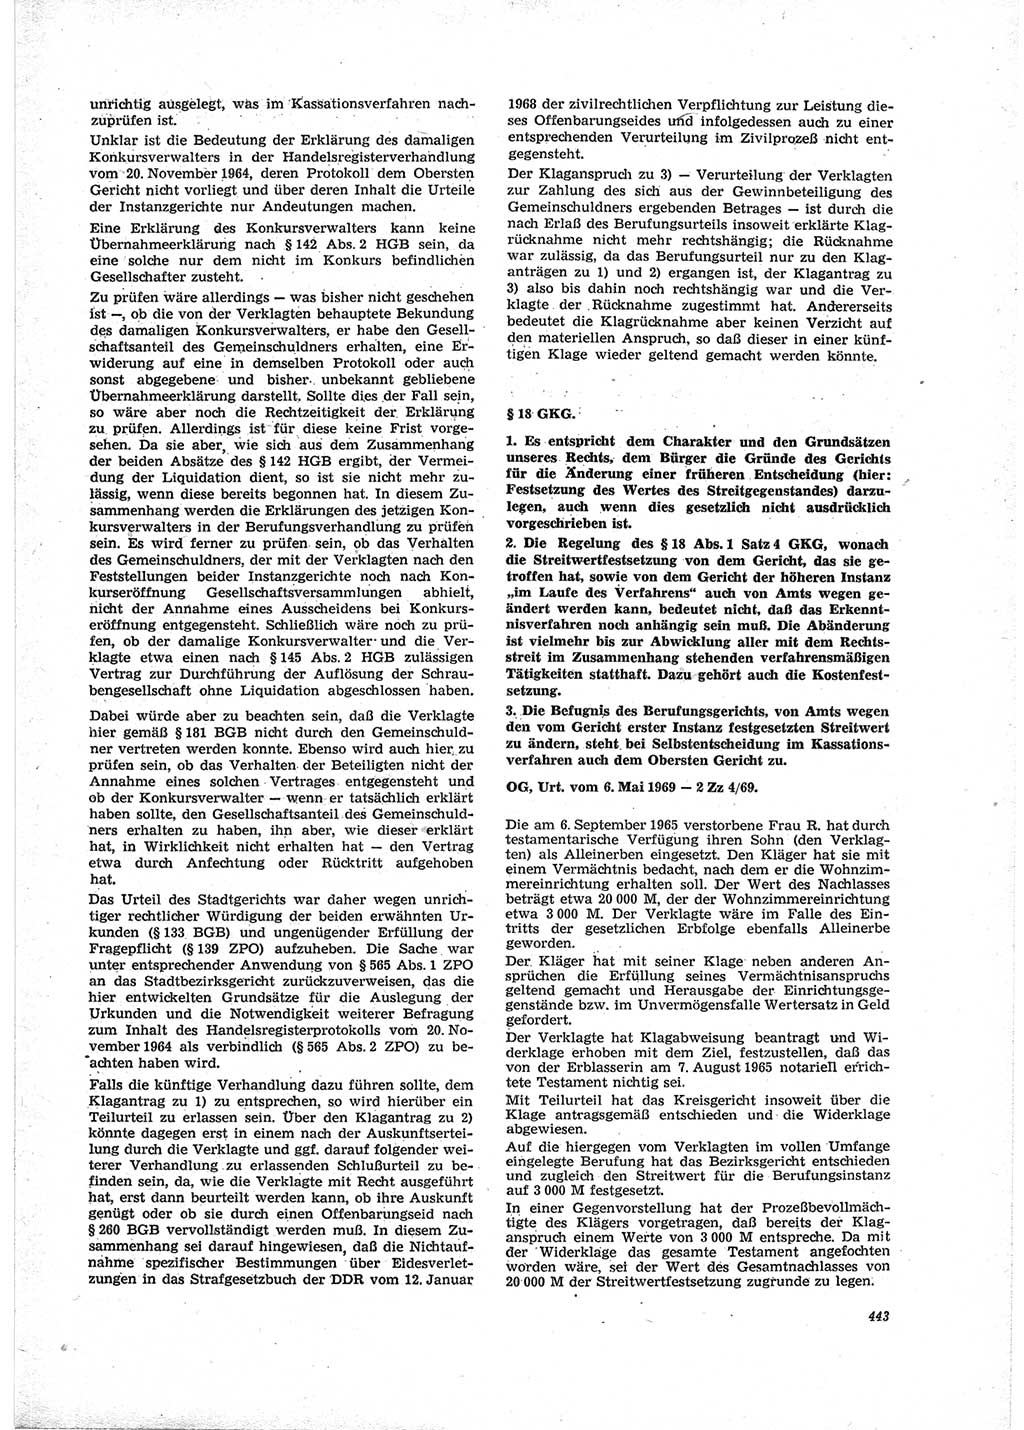 Neue Justiz (NJ), Zeitschrift für Recht und Rechtswissenschaft [Deutsche Demokratische Republik (DDR)], 23. Jahrgang 1969, Seite 443 (NJ DDR 1969, S. 443)